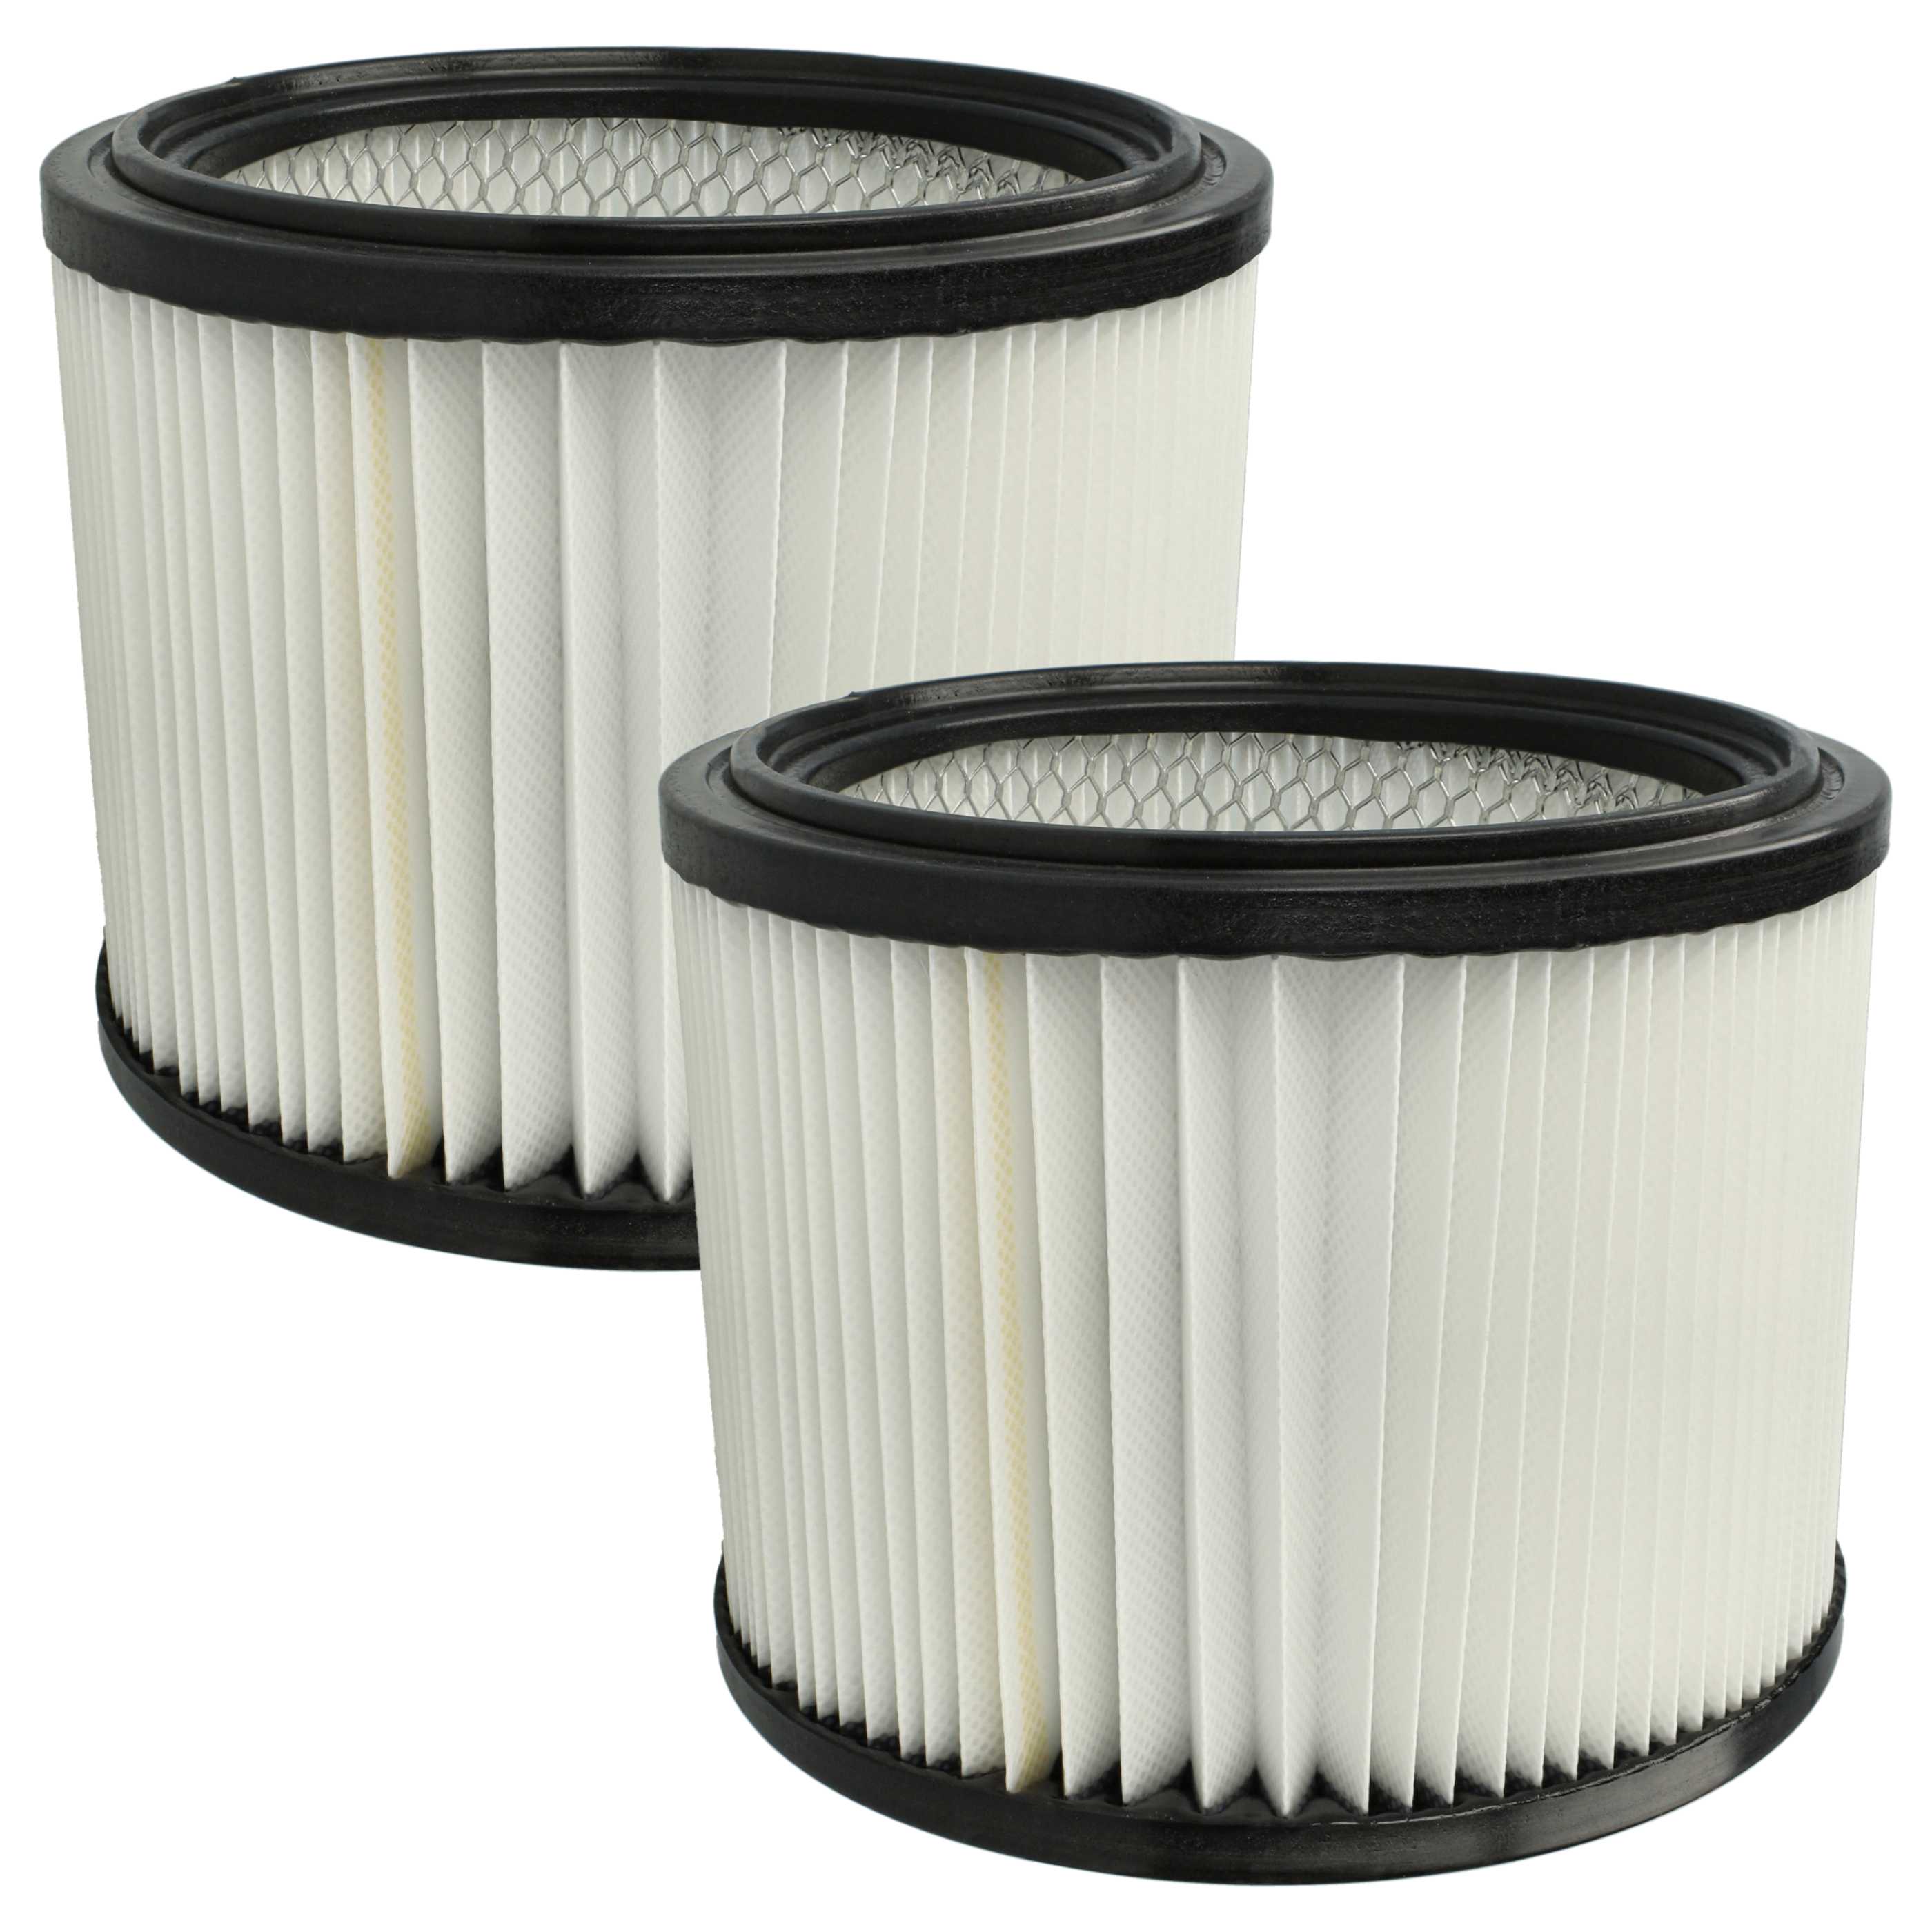 2x Filtro sostituisce Starmix FPP 5000 HEPA WS, 460475 per aspirapolvere - filtro a pieghe, nero / bianco